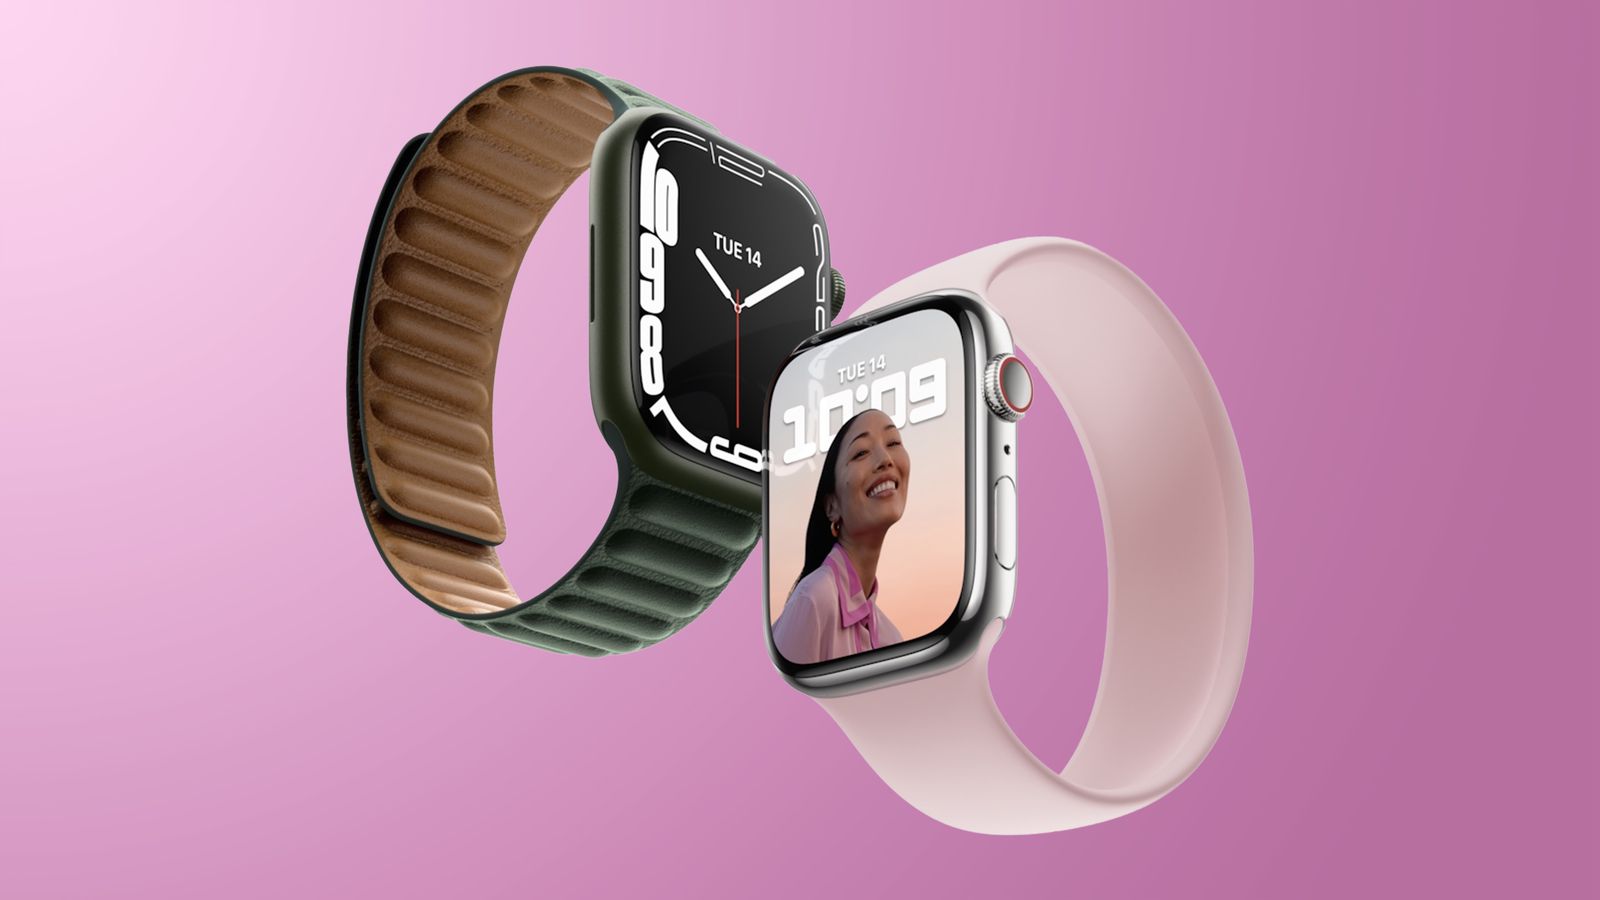 Apple Watch Series 8 là một sản phẩm công nghệ mang lại sự đột phá trong lĩnh vực đồng hồ thông minh. Với thiết kế sang trọng, tính năng đa dạng và khả năng giao tiếp thông minh với iPhone của bạn, Apple Watch Series 8 đang là lựa chọn hoàn hảo cho những người yêu công nghệ. Hãy xem những hình ảnh về sản phẩm này để có cái nhìn trực quan và hiểu rõ hơn về sức mạnh của Apple Watch Series 8.